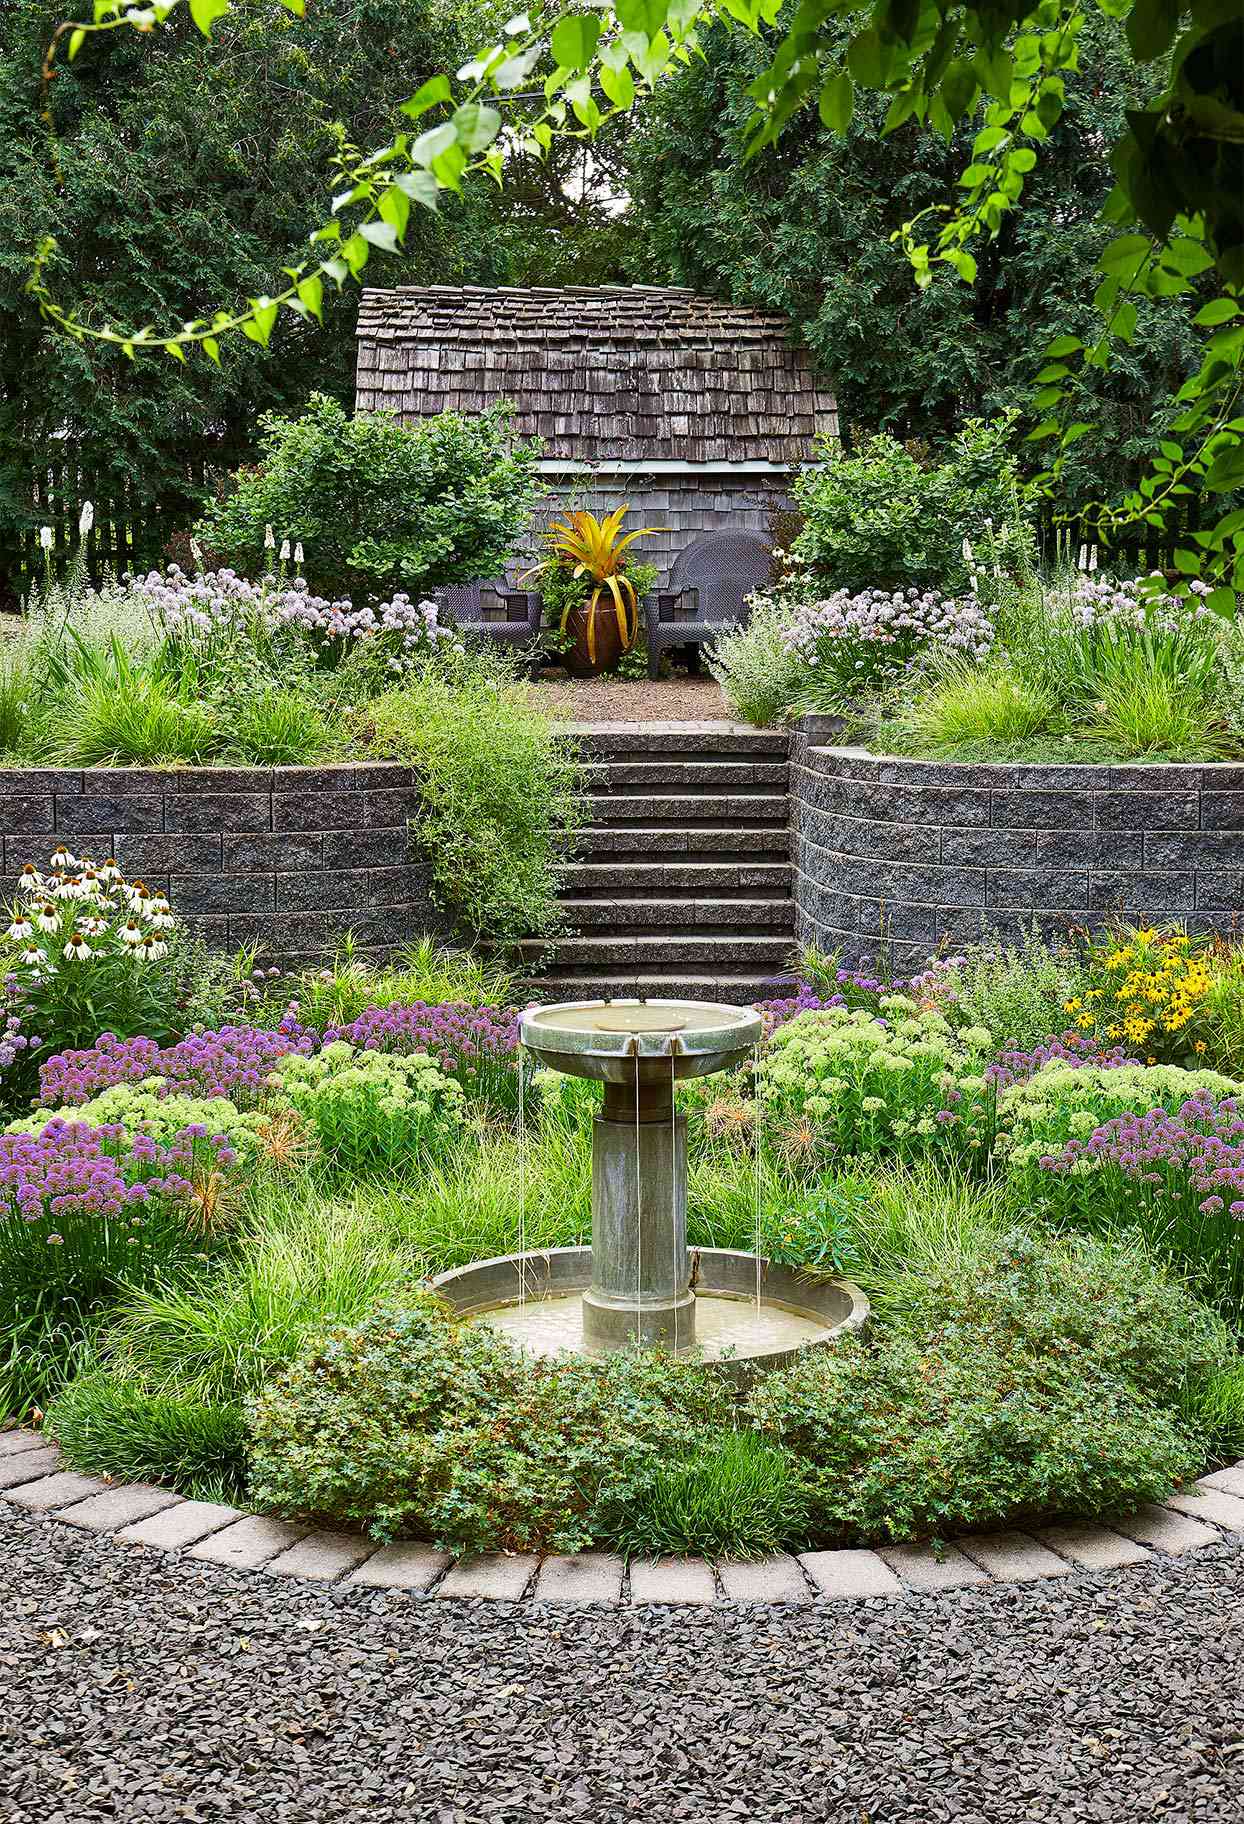 fountain in center of garden